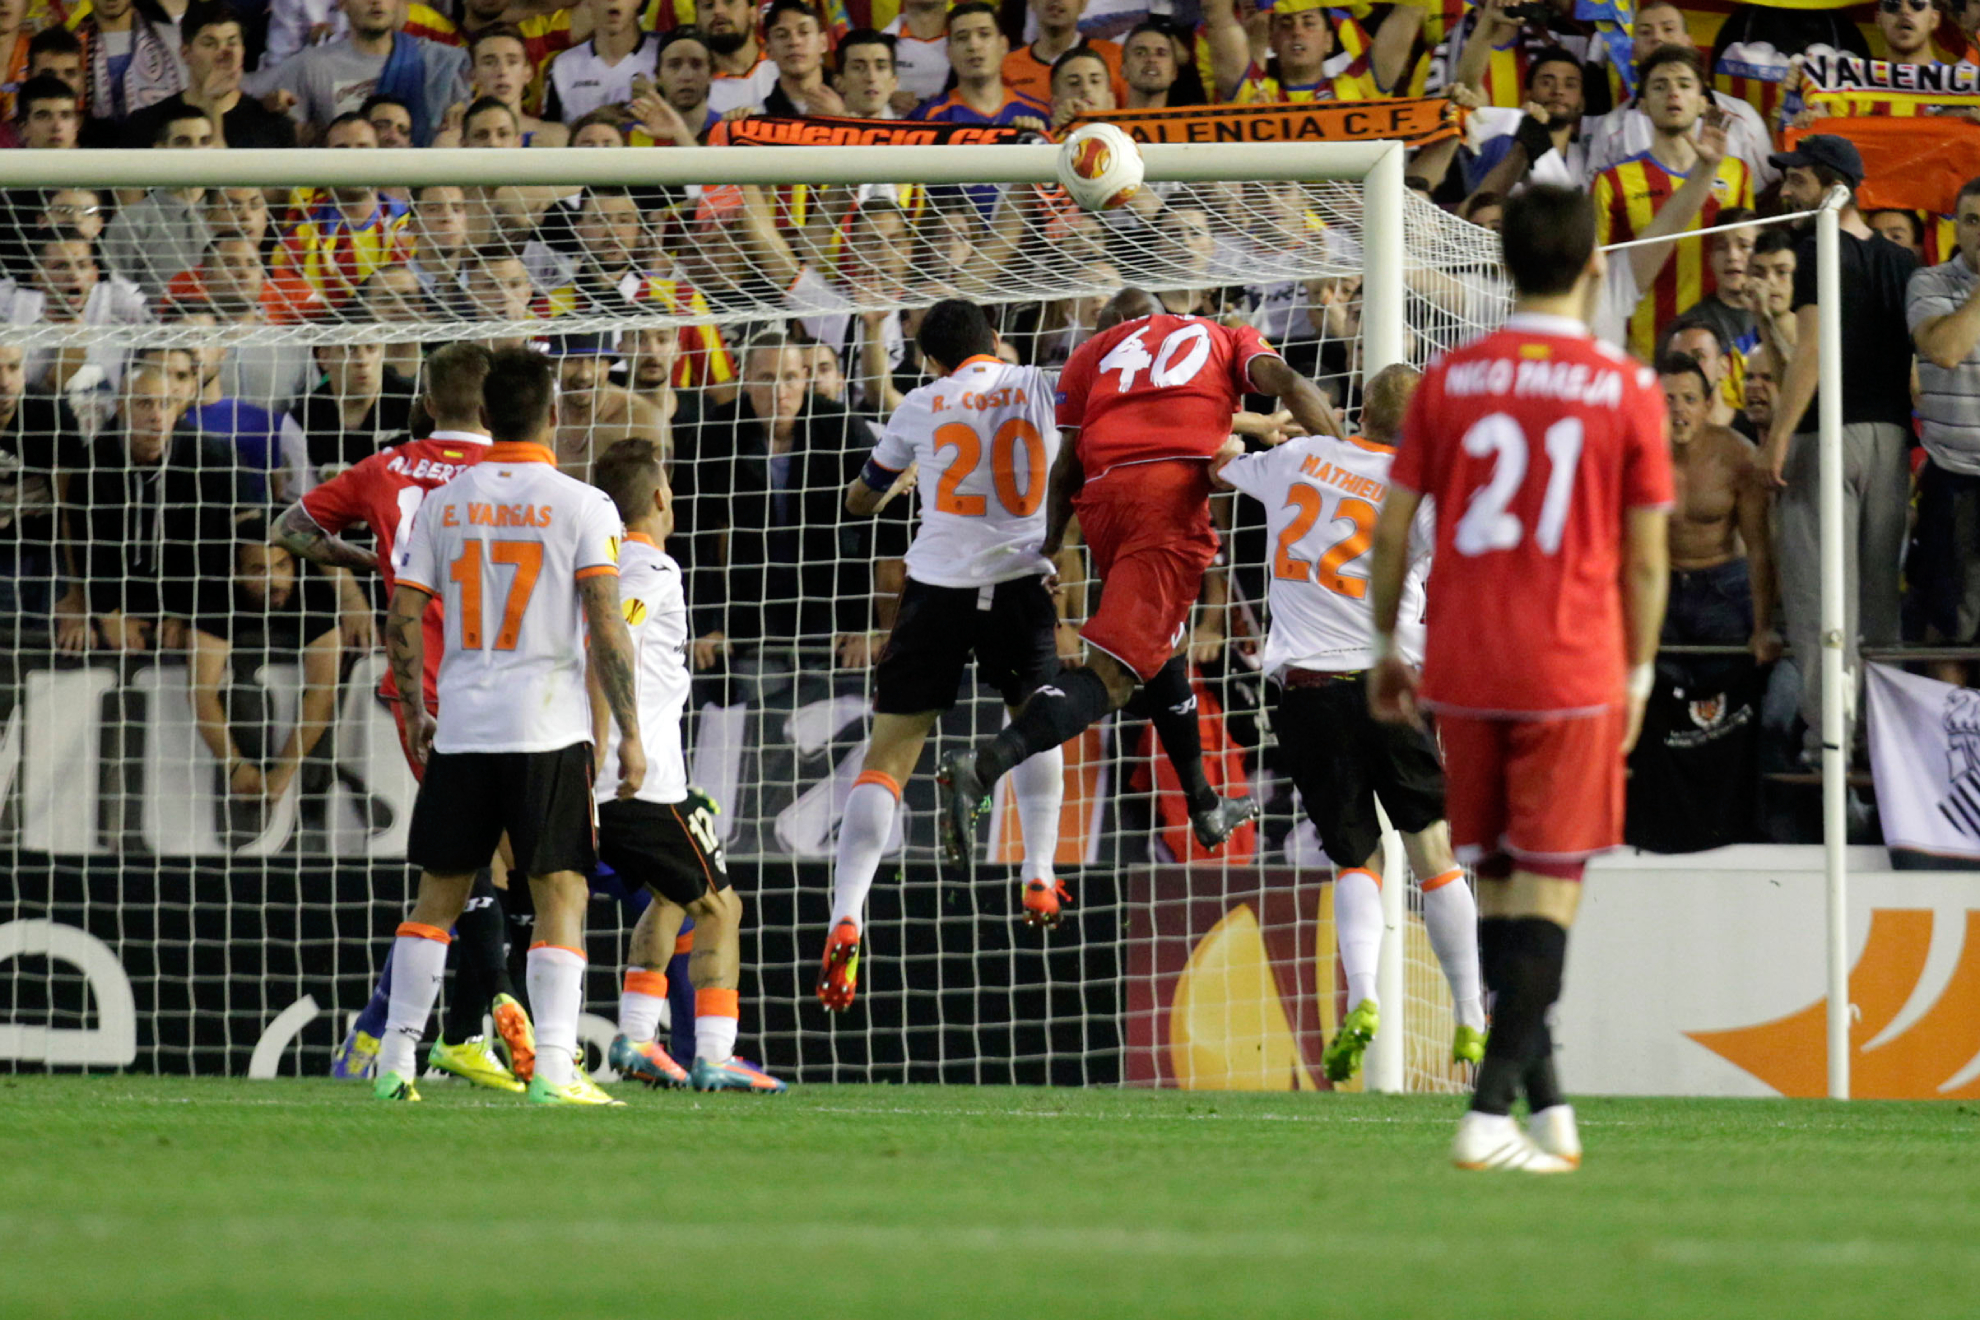 Mbeya goal in Mestalla in the UEL semi-final.